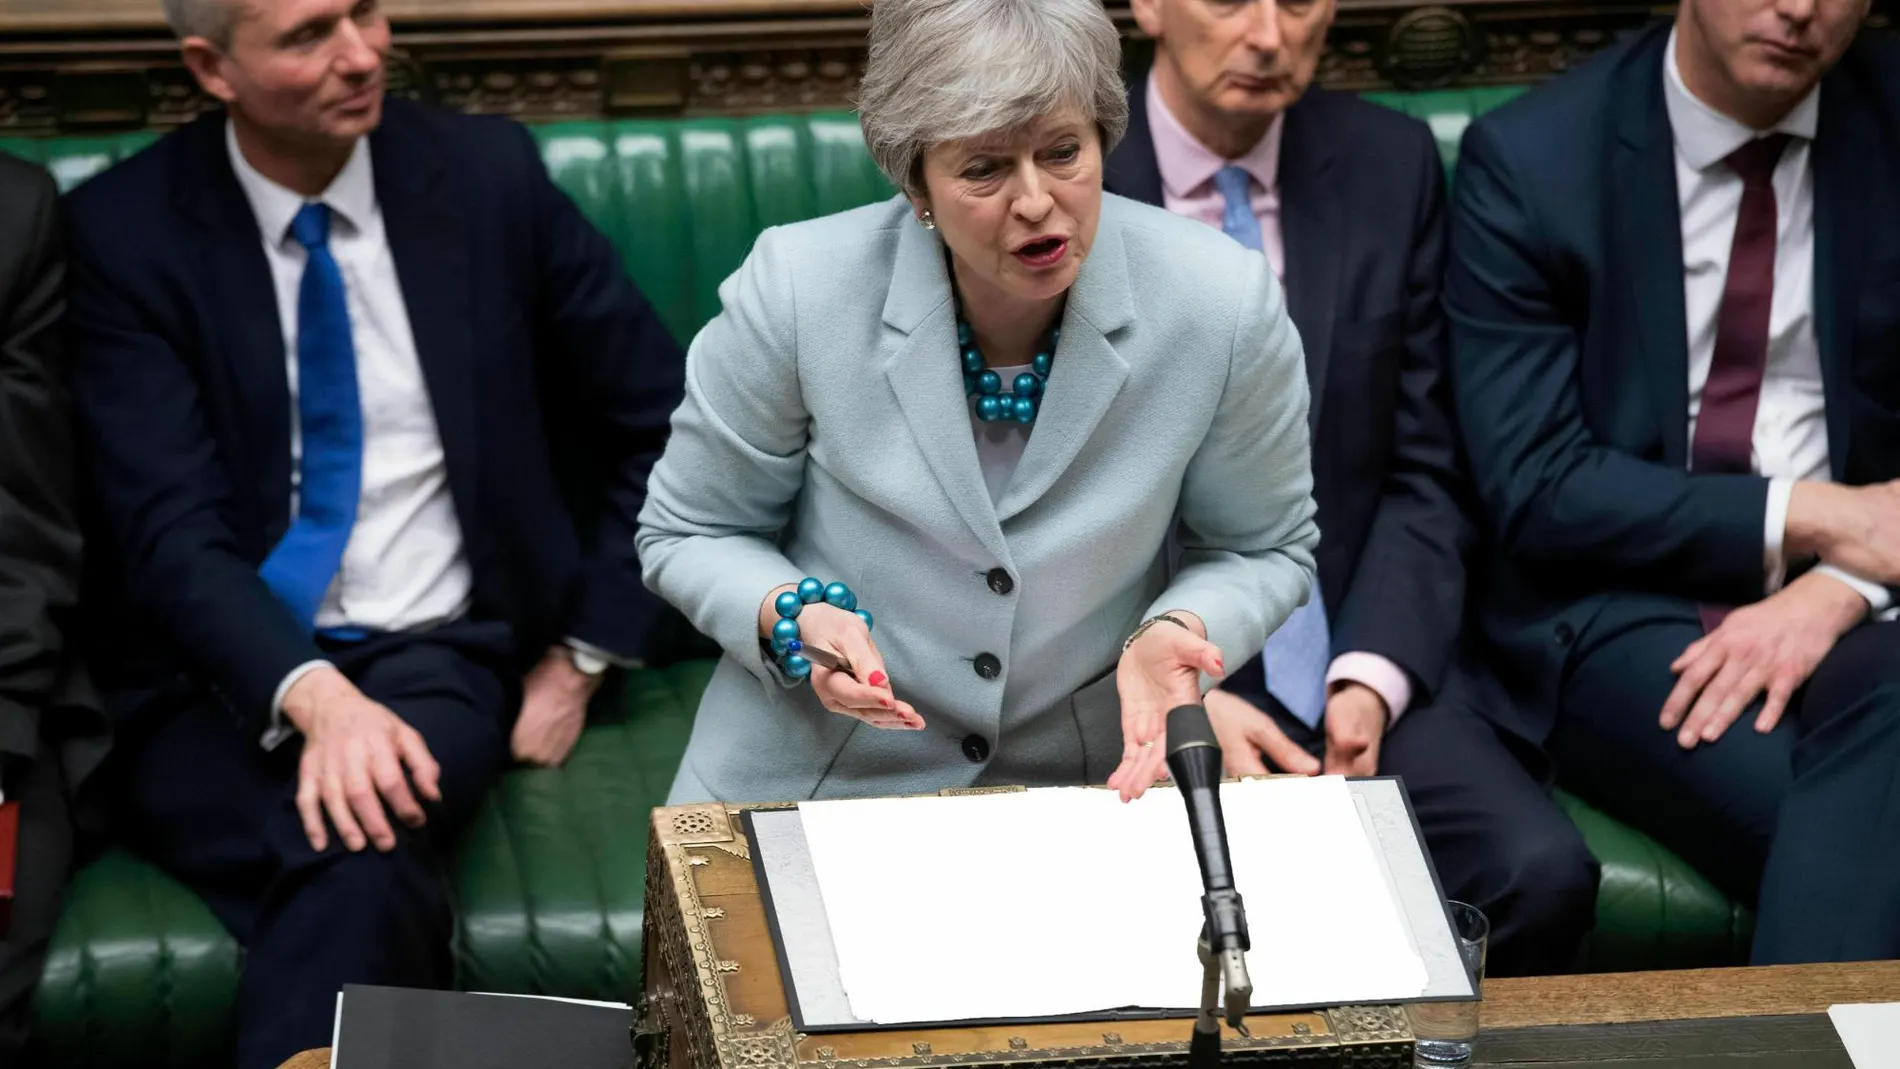 La ‘premier’ británica Theresa May en el Parlamento británico / Ap